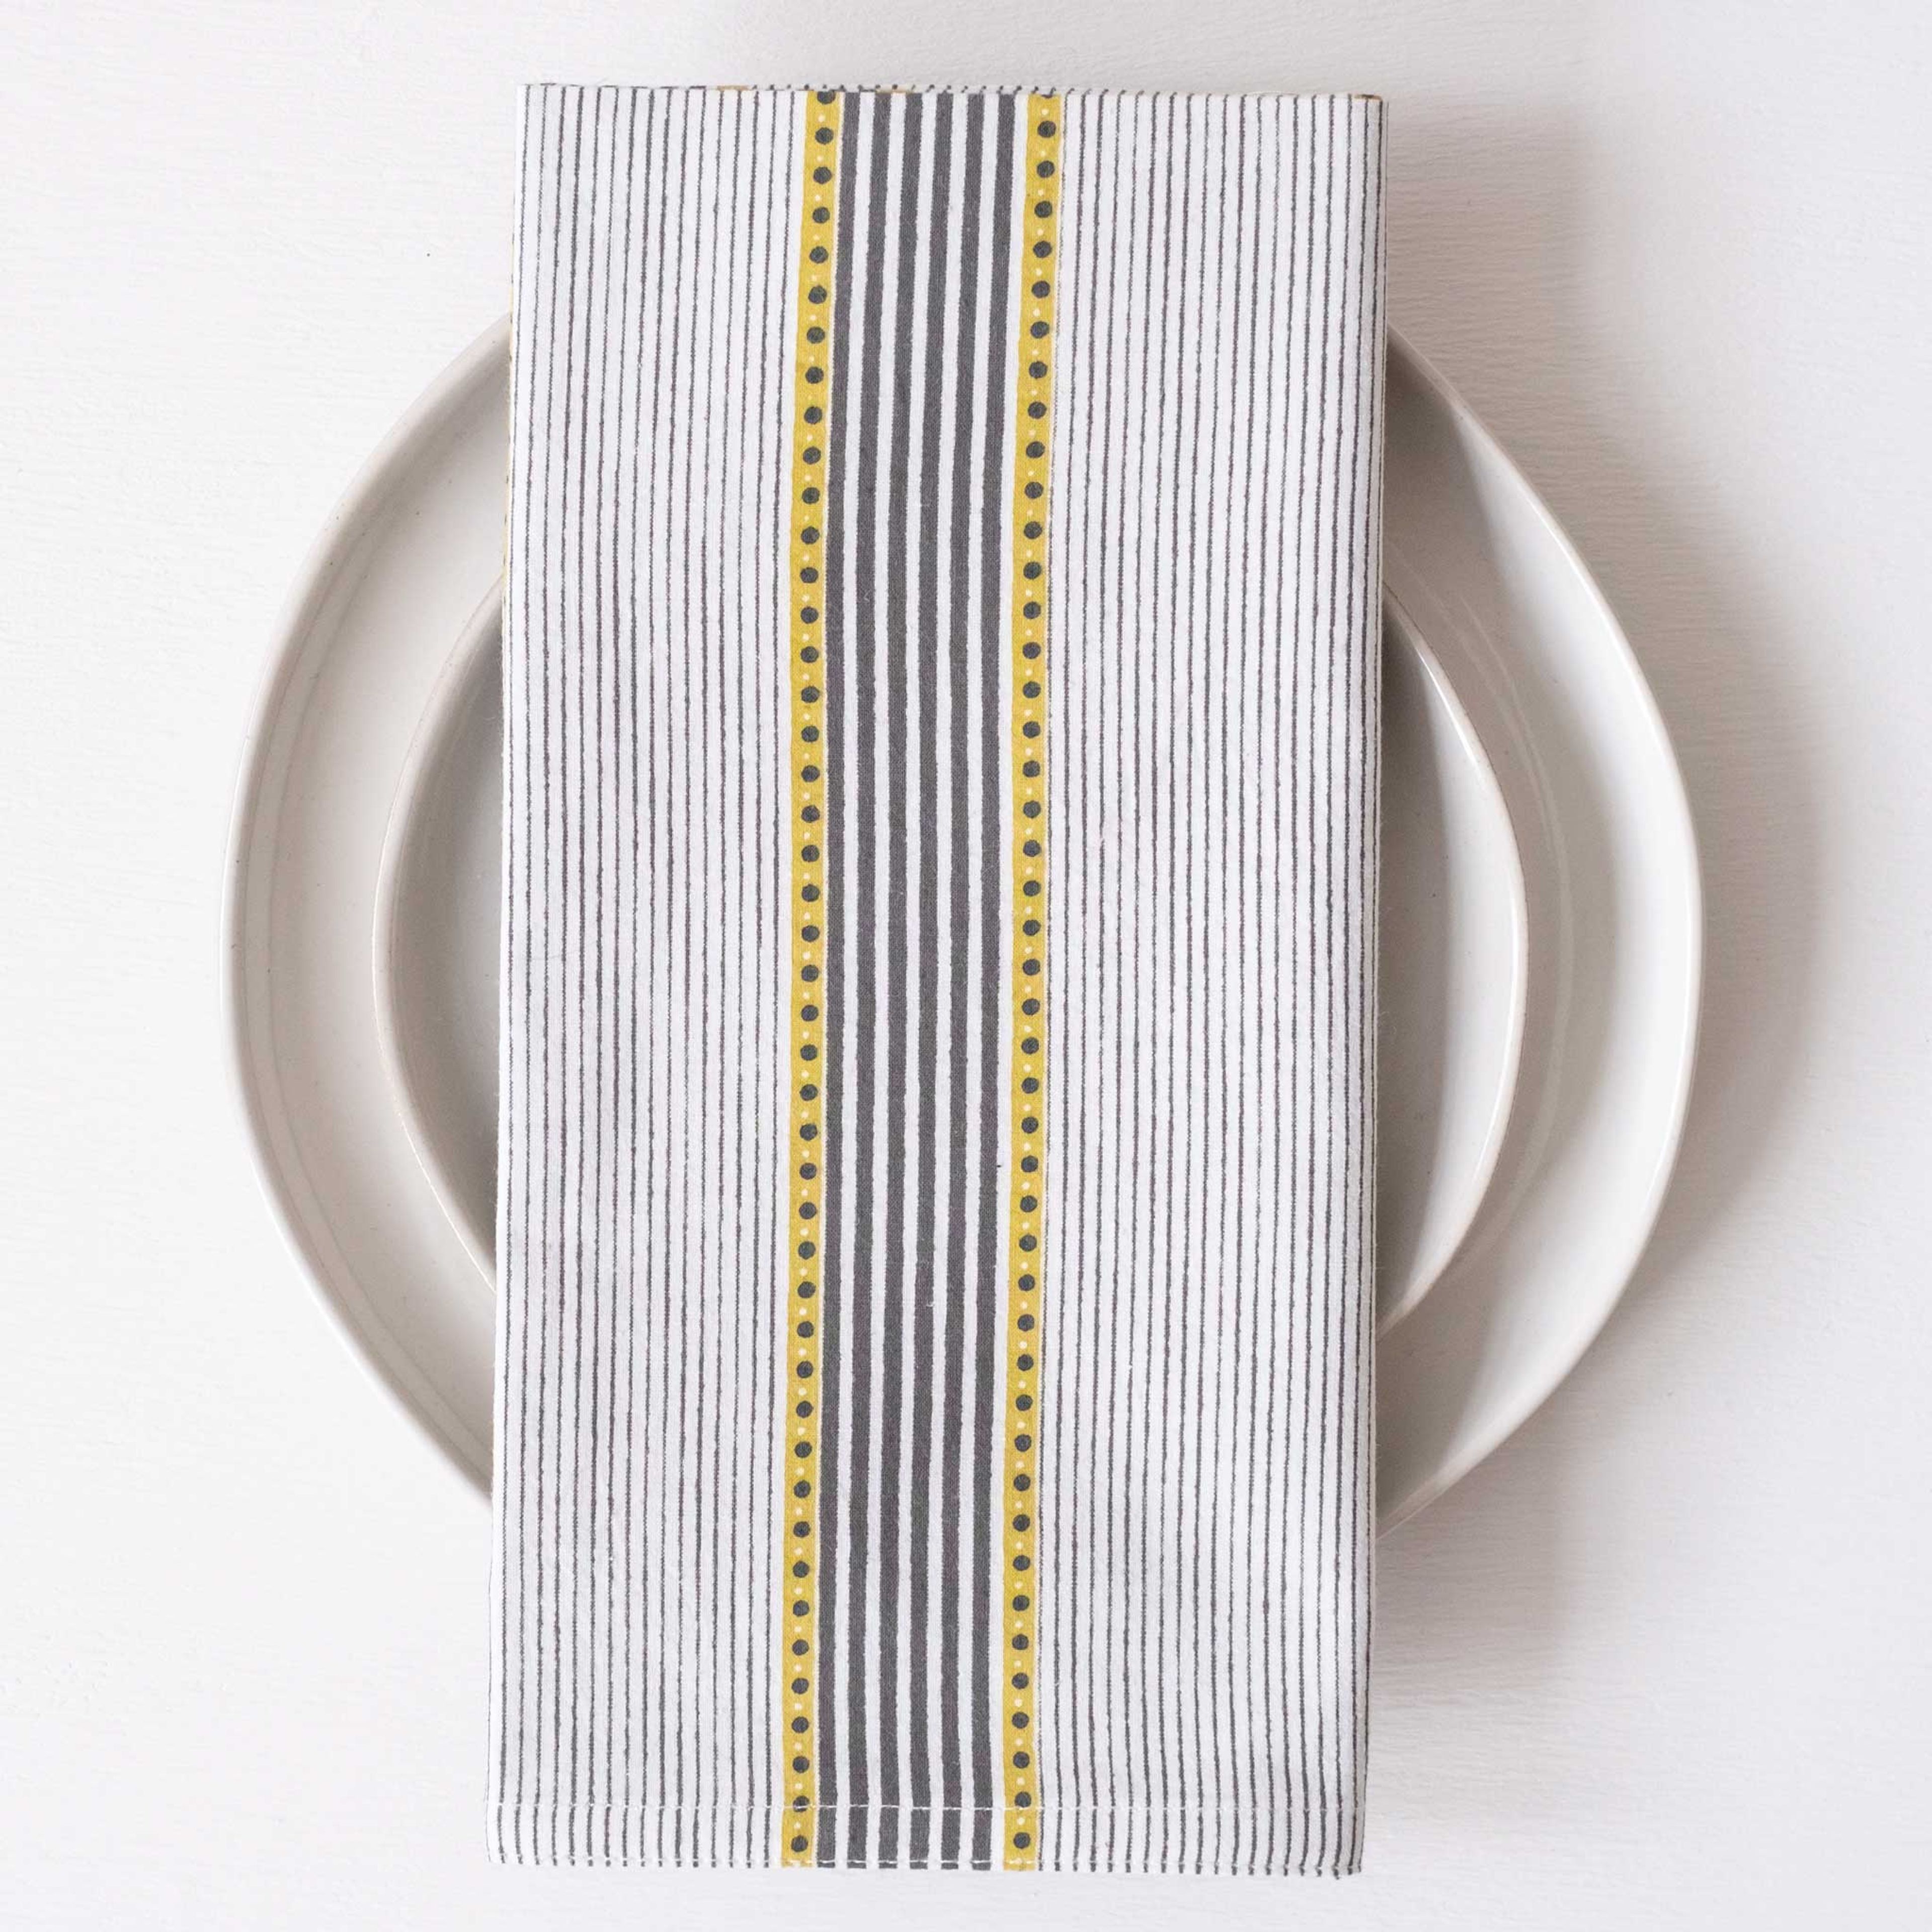 Trilot Stripes Olive Block Printed Napkins - set of 4